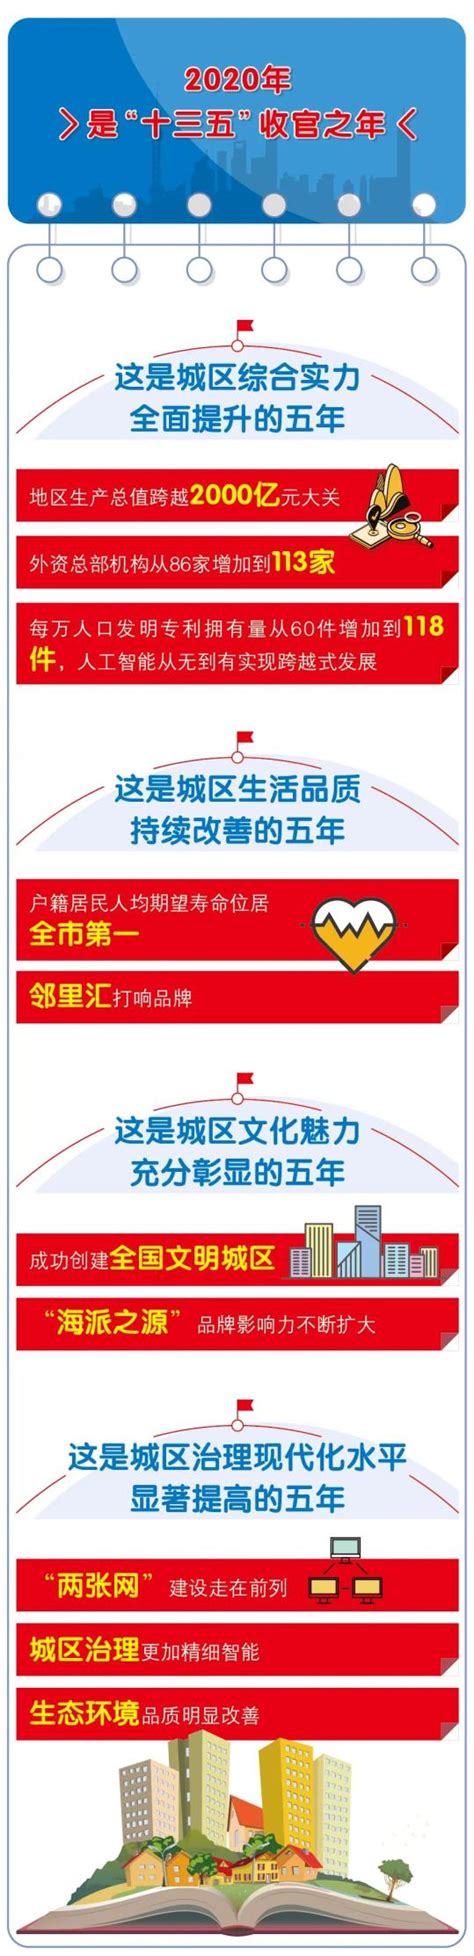 徐汇区第一批重点商标保护名录公布|附详情- 上海本地宝